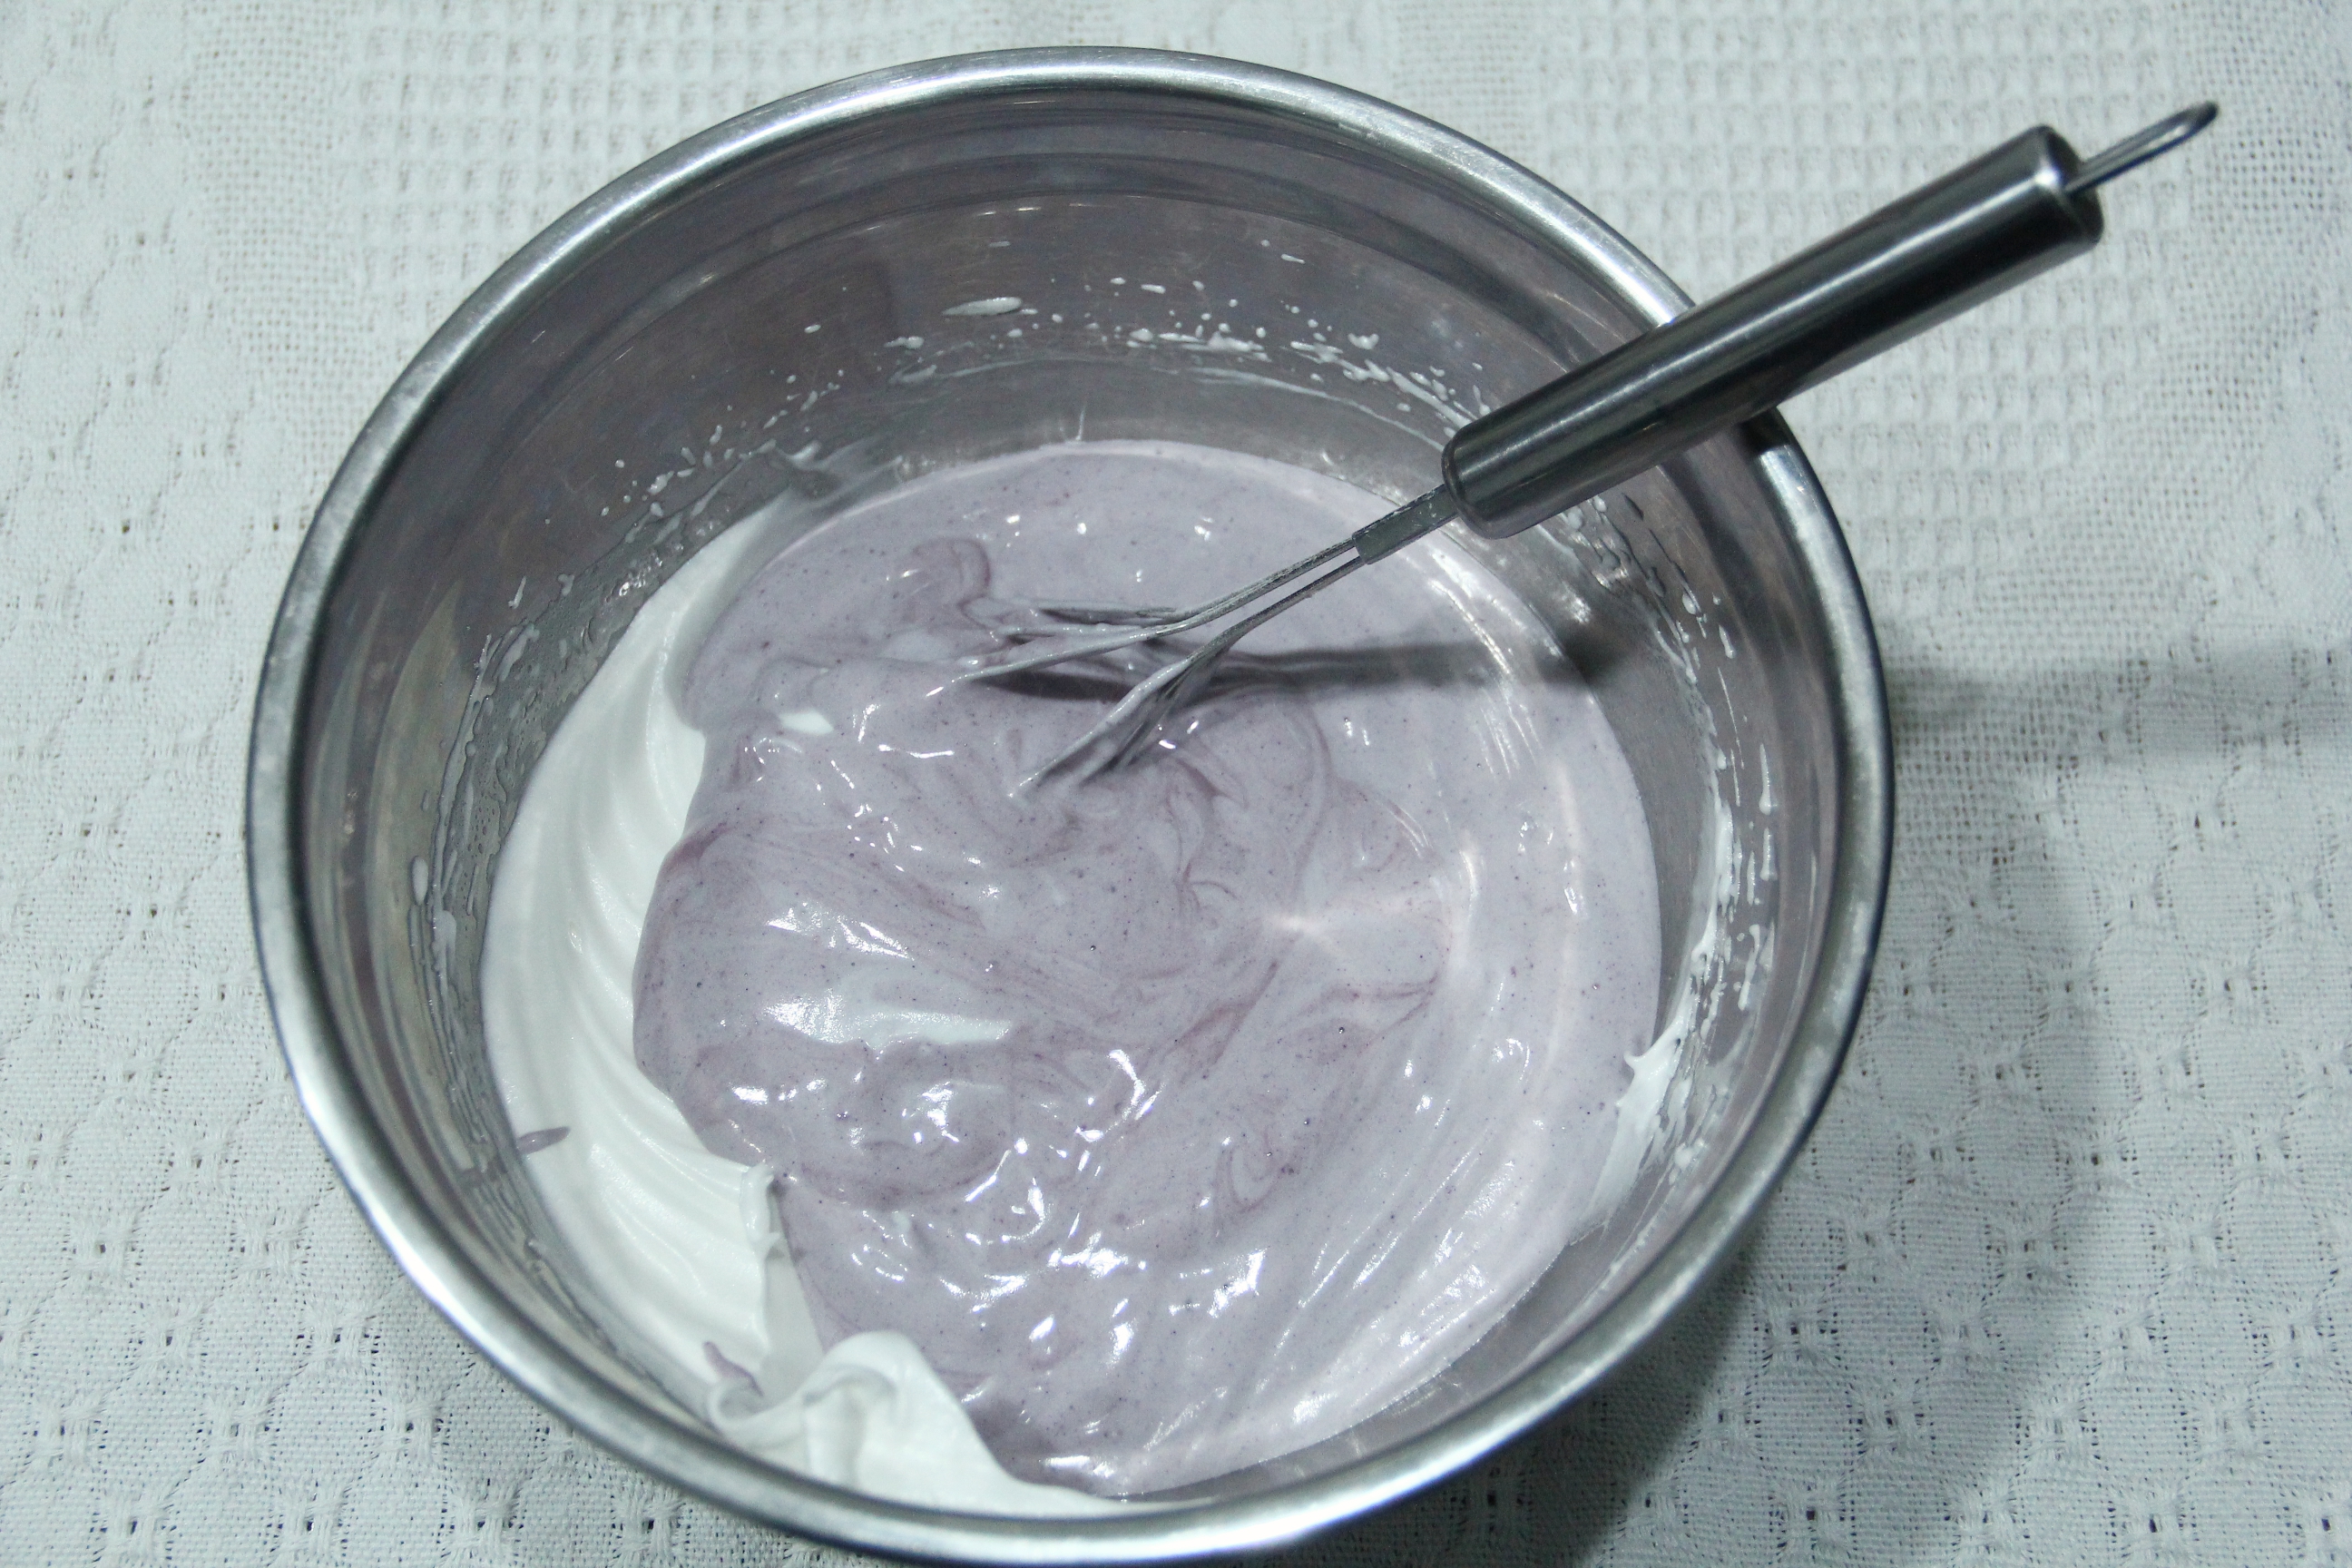 奇奇怪怪的紫薯粉雪域小贝，顺滑软糯，冰冰凉凉，新年小甜品安排